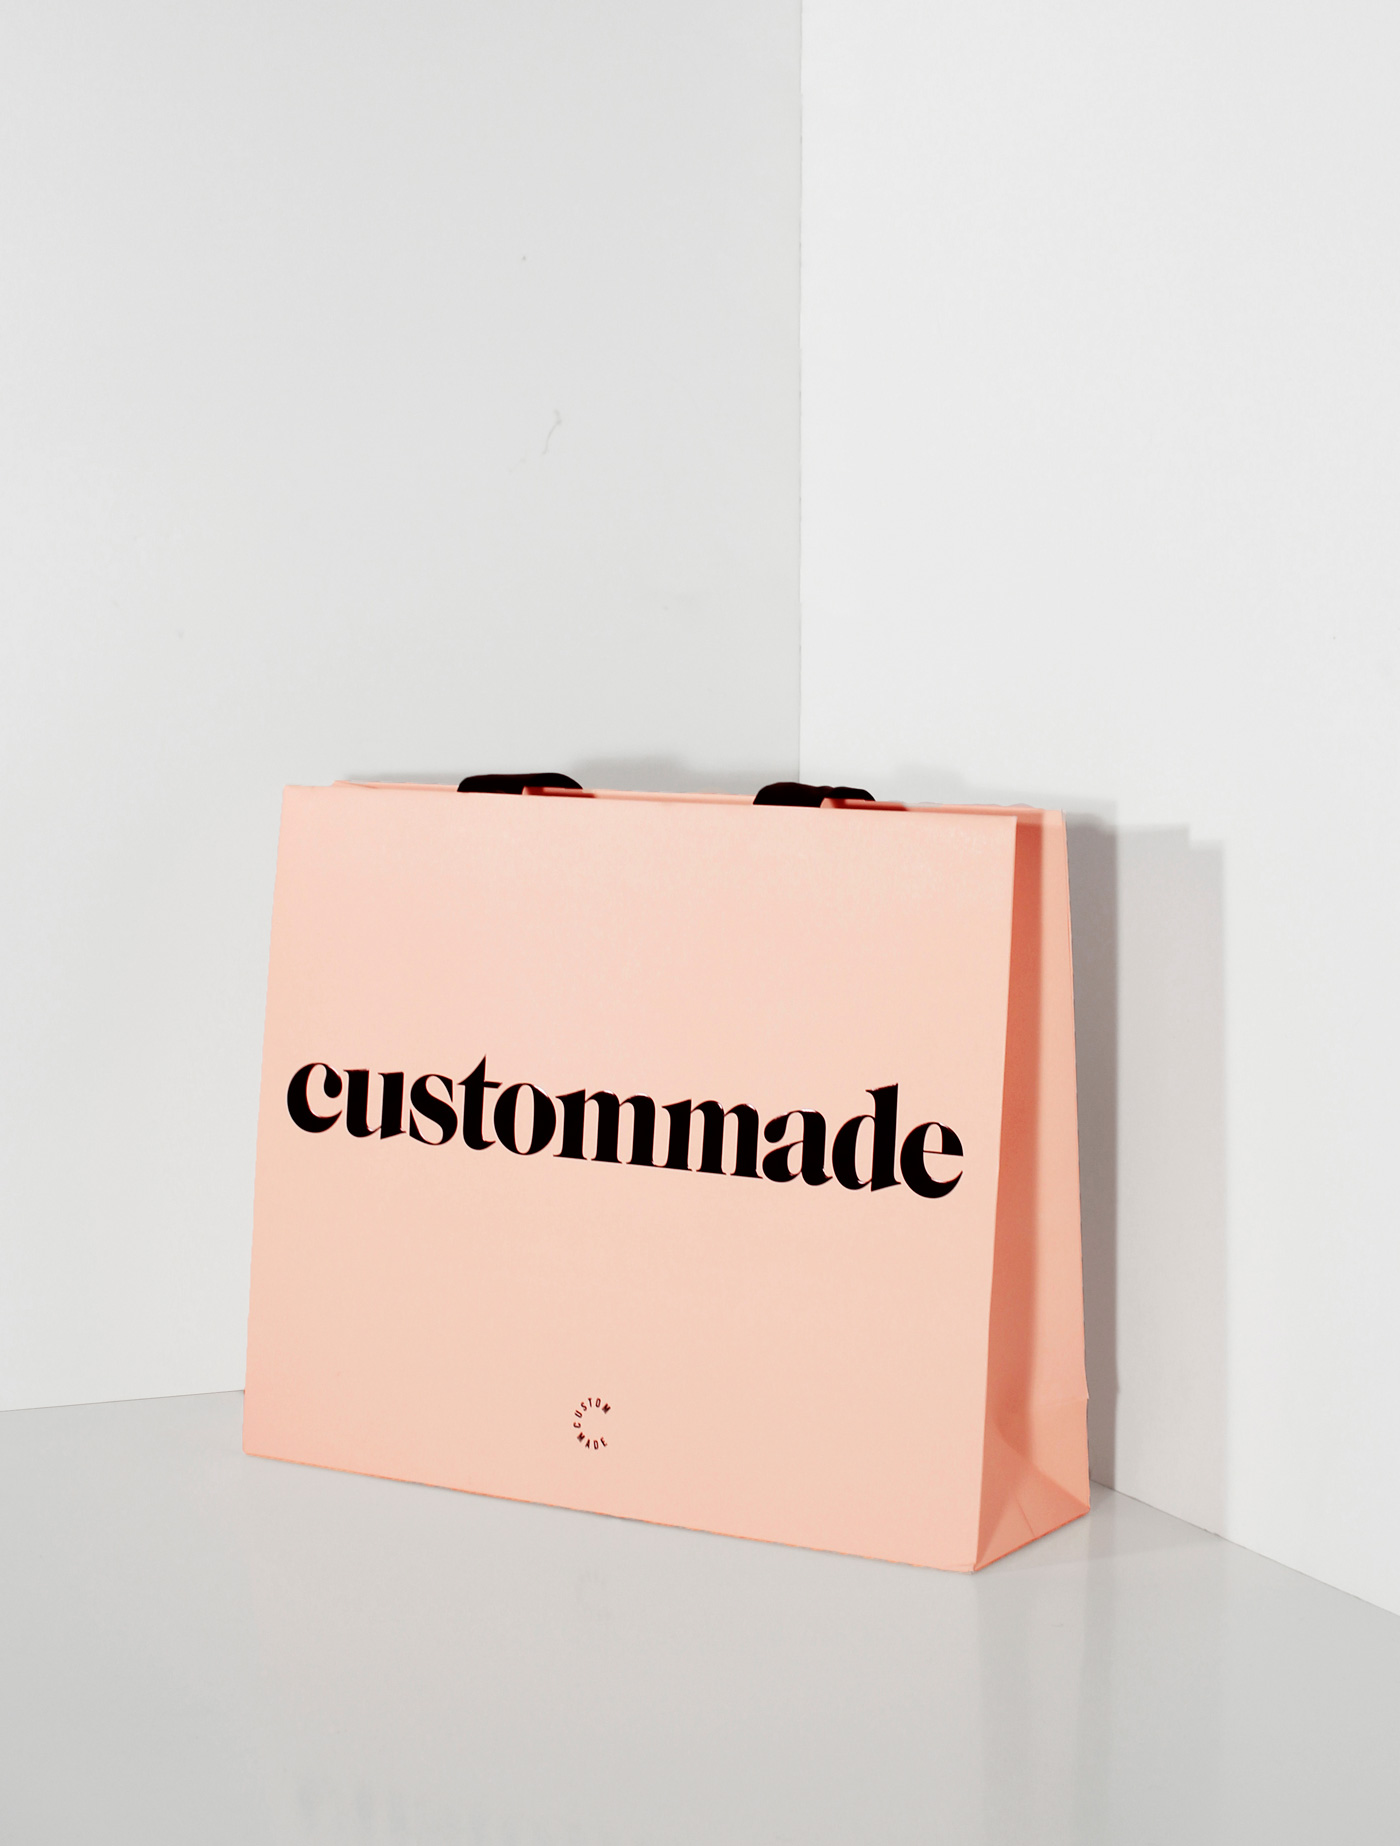 Custommade – Shopping bag